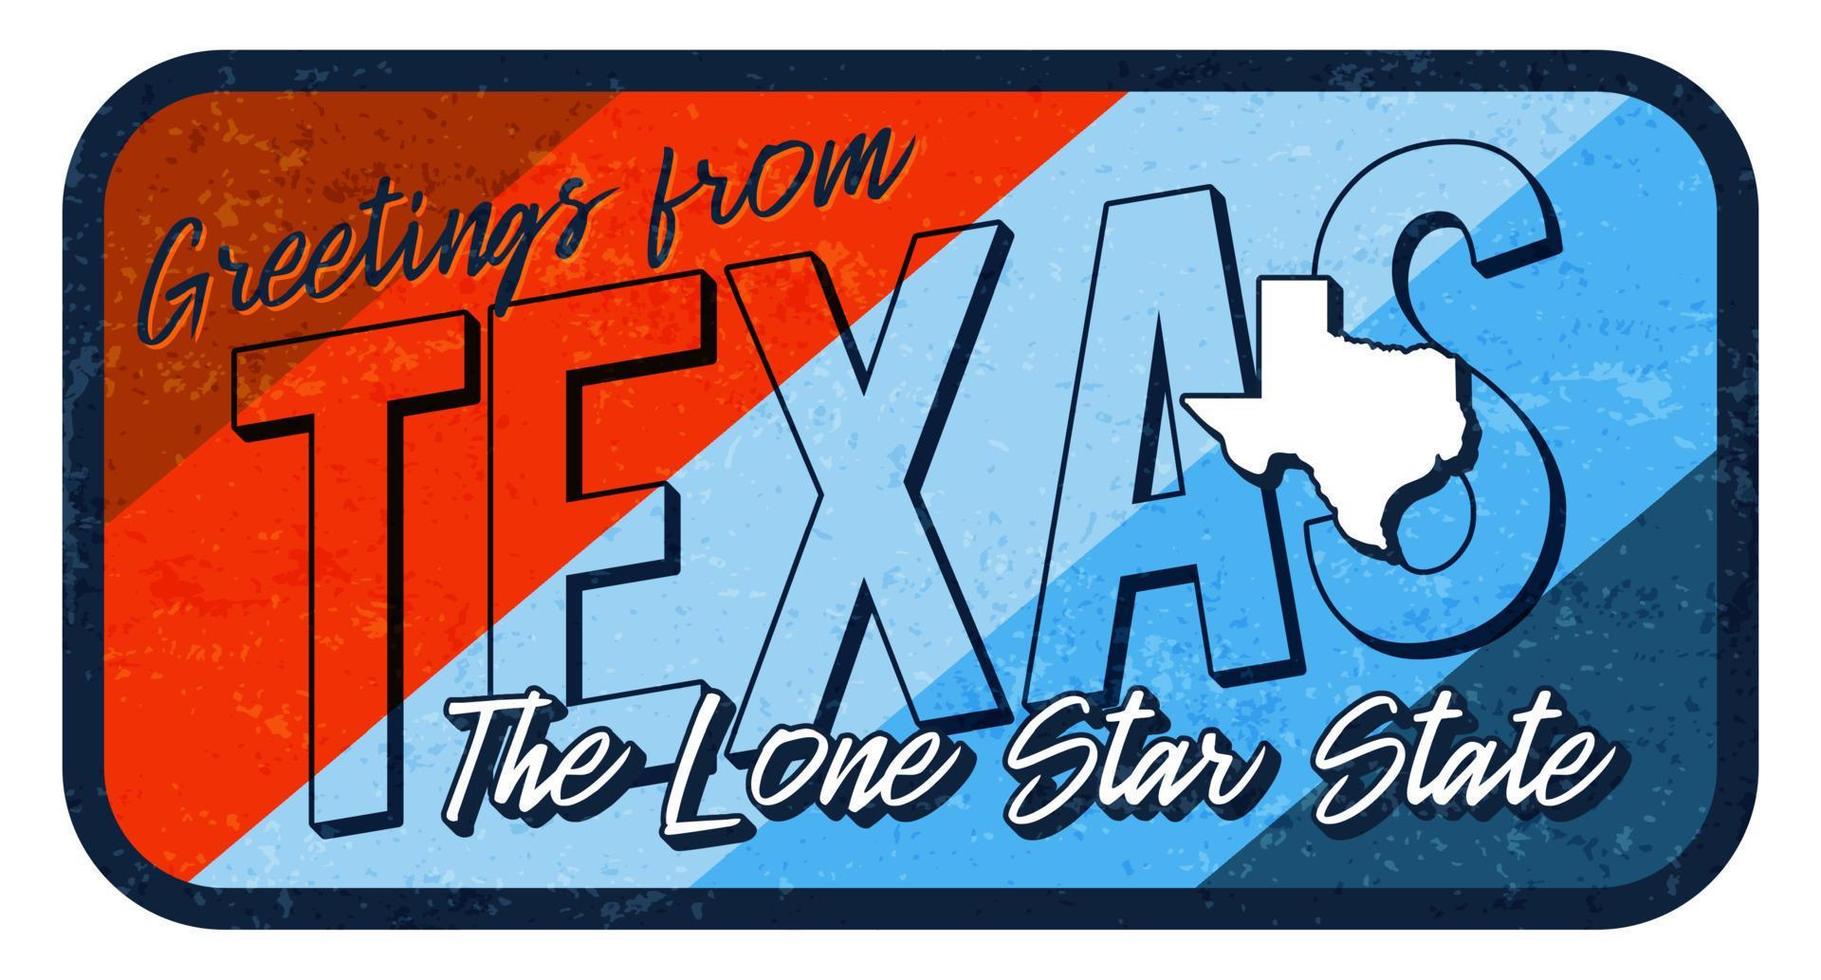 groet uit Texas vintage roestige metalen teken vectorillustratie. vector staatskaart in grunge-stijl met typografie handgetekende letters